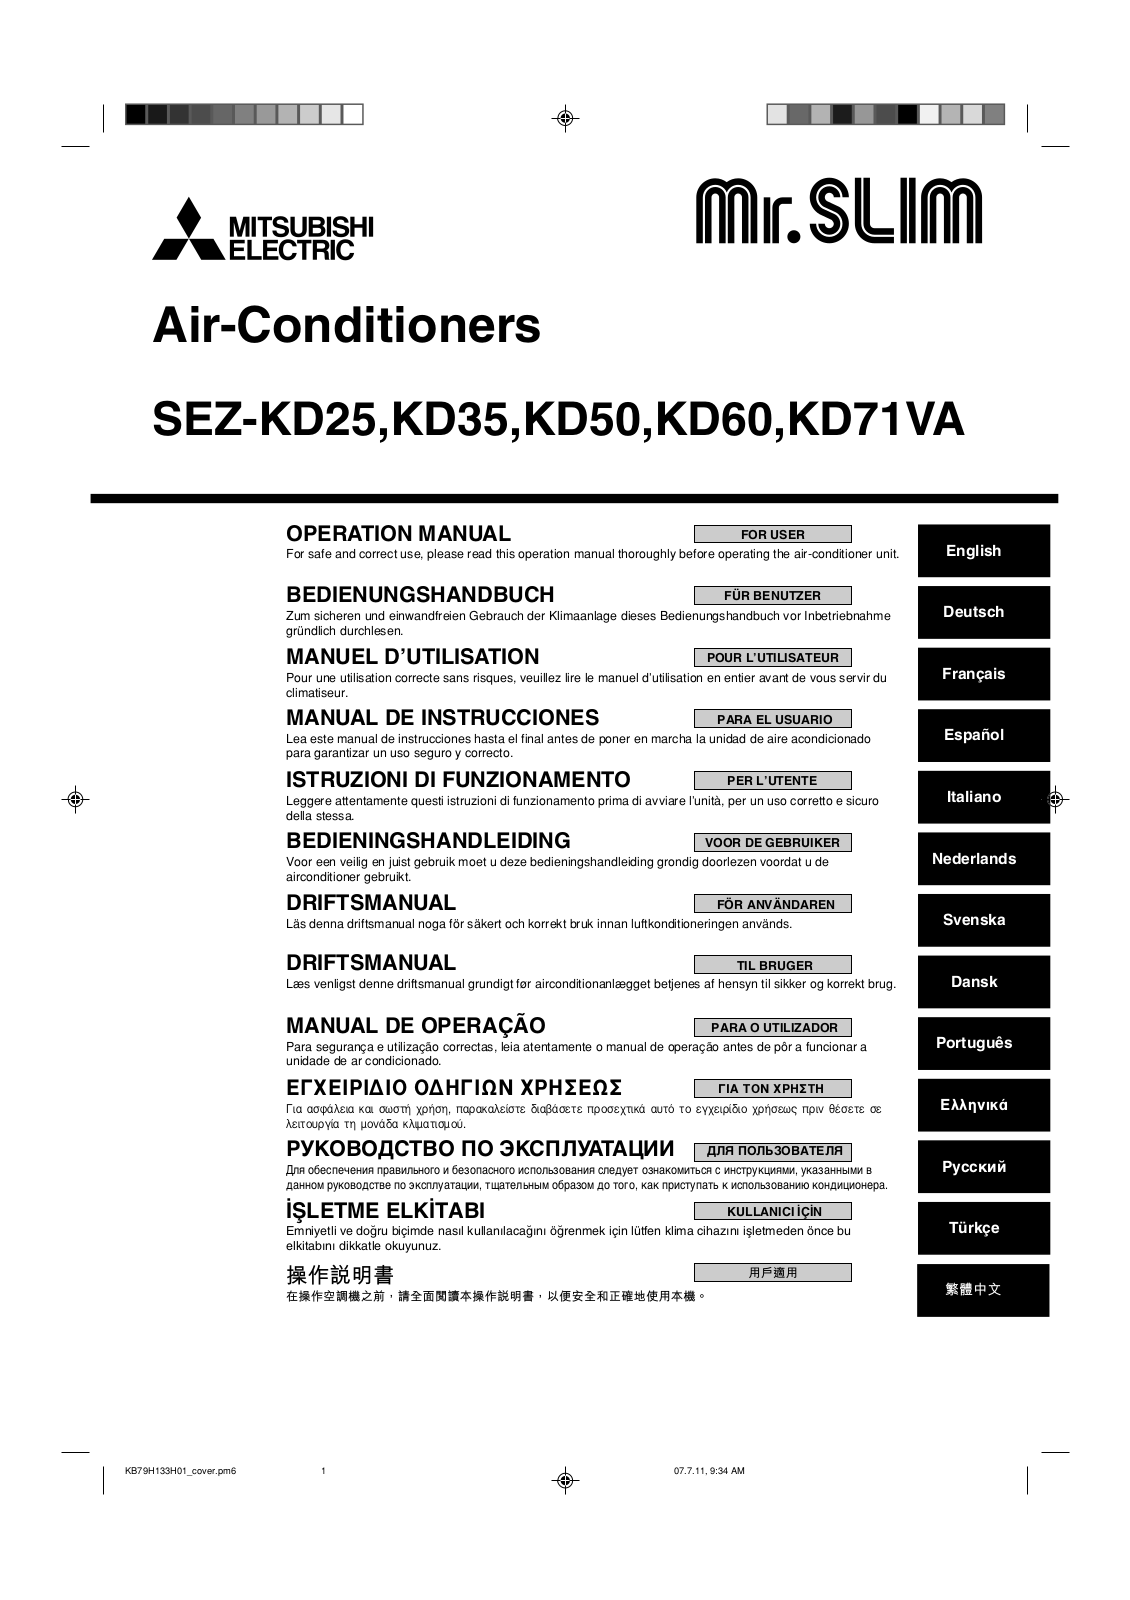 Mitsubishi SEZ-KD25, SEZ-KD35, SEZ-KD50, SEZ-KD60, SEZ-KD71VA User Manual